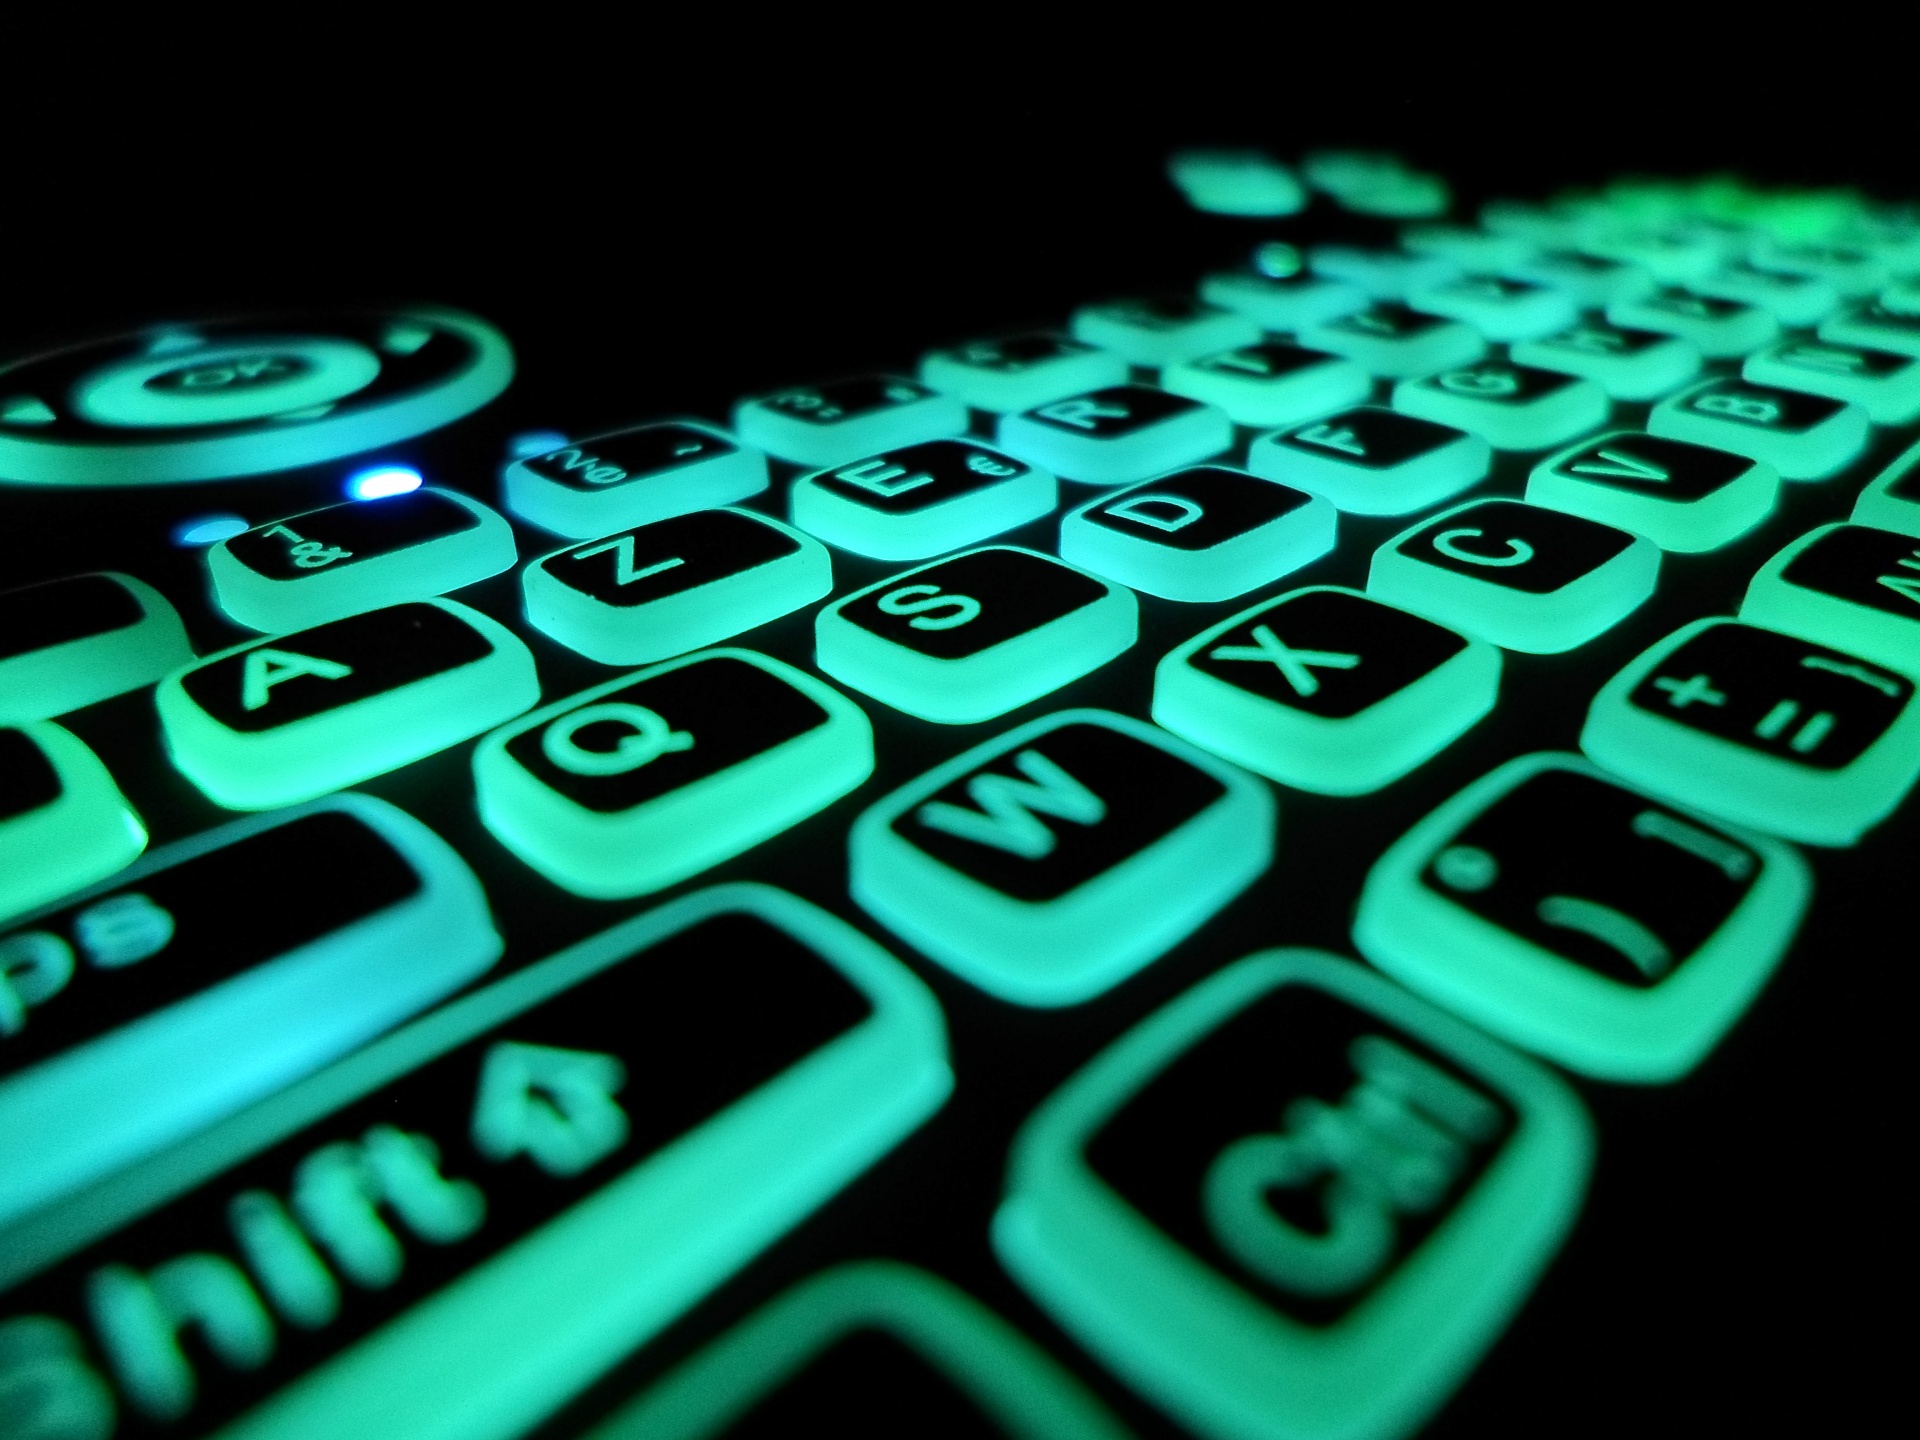 Luz de fundo azul do teclado azerty